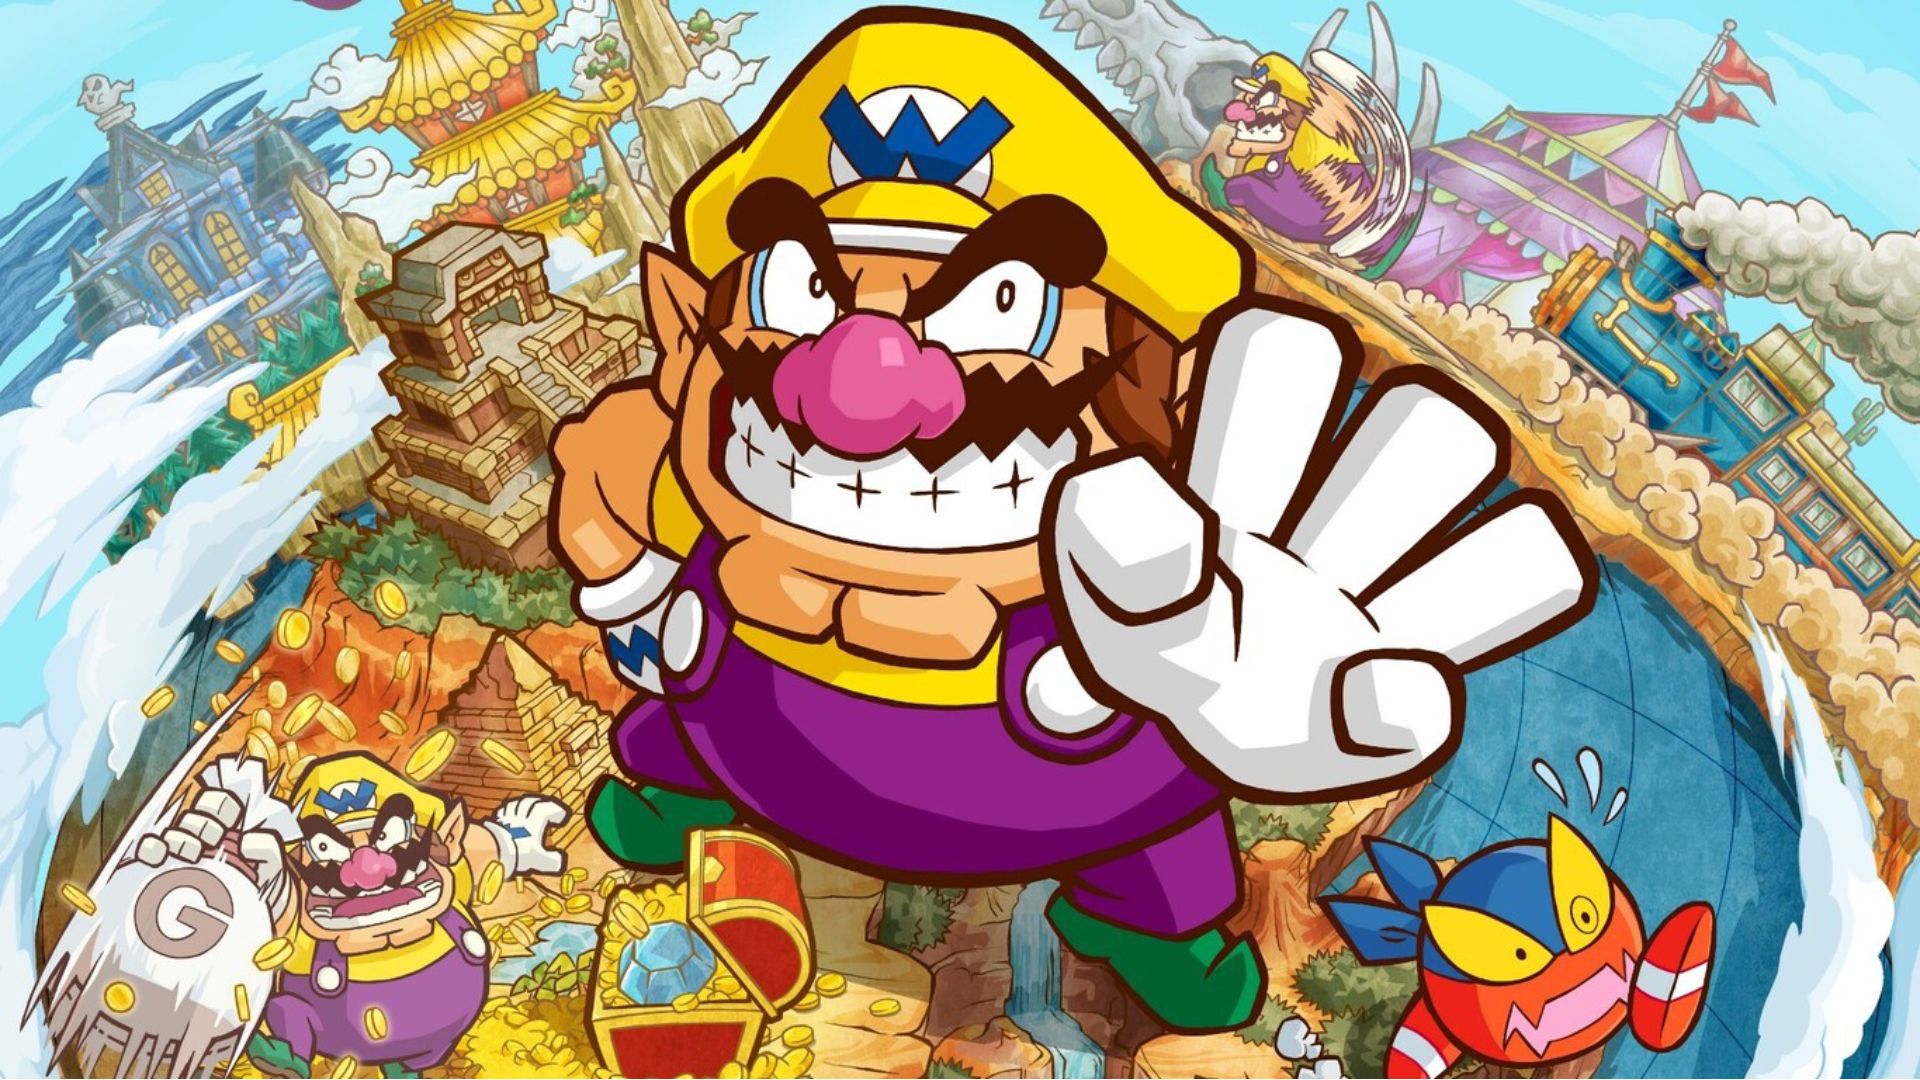 Imagen del videojuego de Wario, enemigo de Mario.